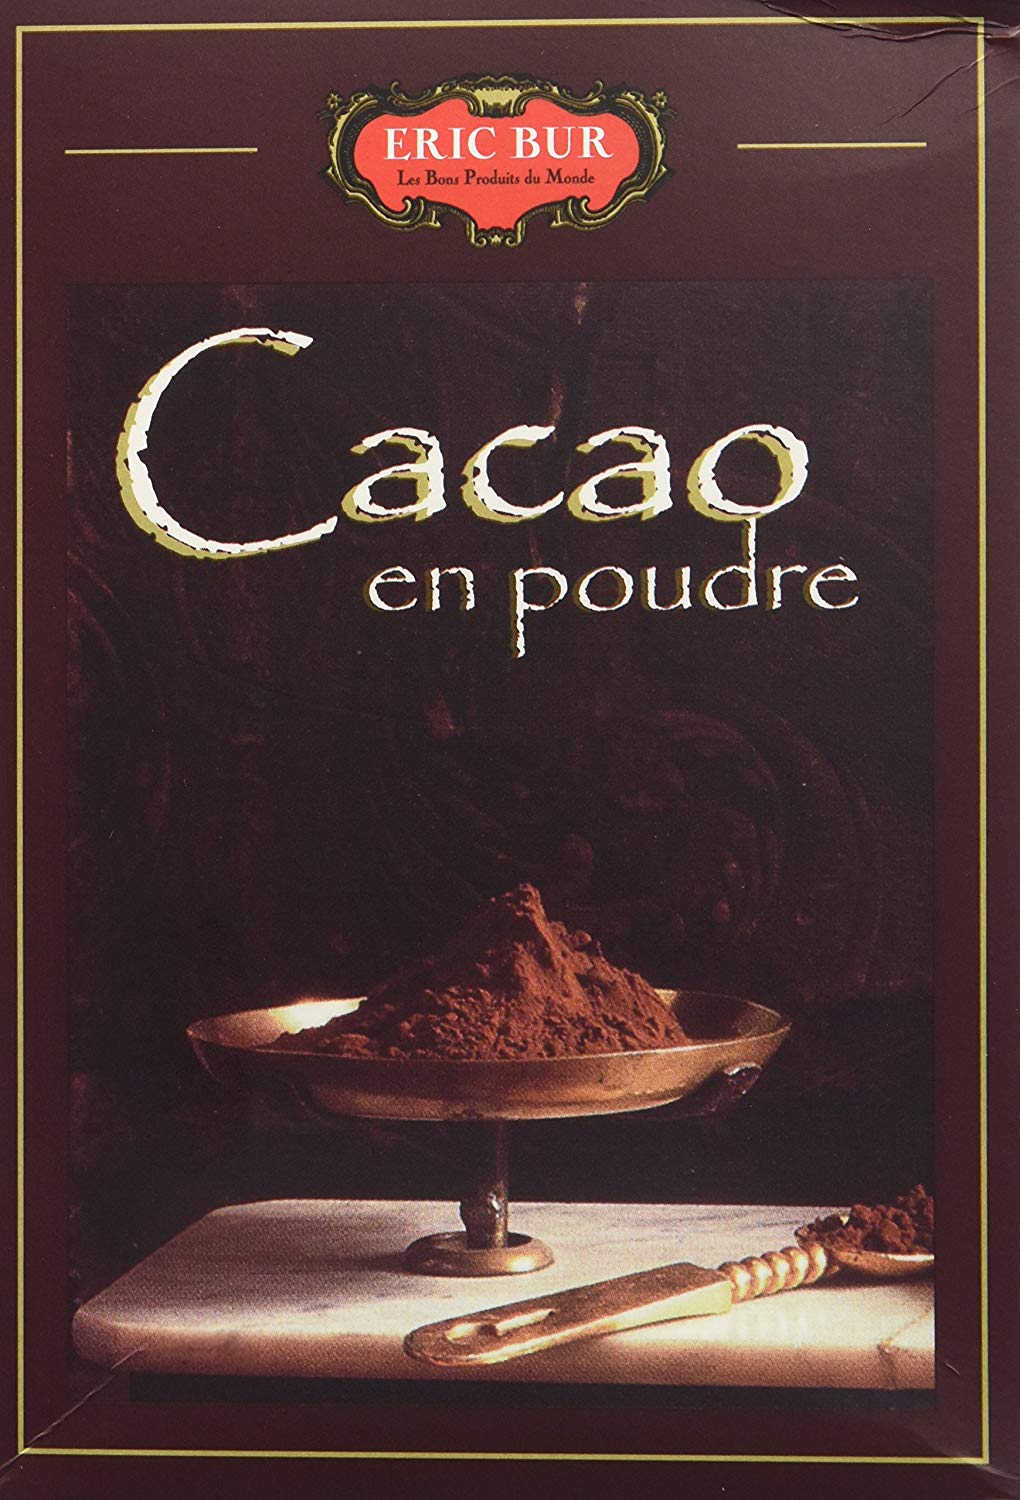 ERIC BUR - Cacao en poudre 